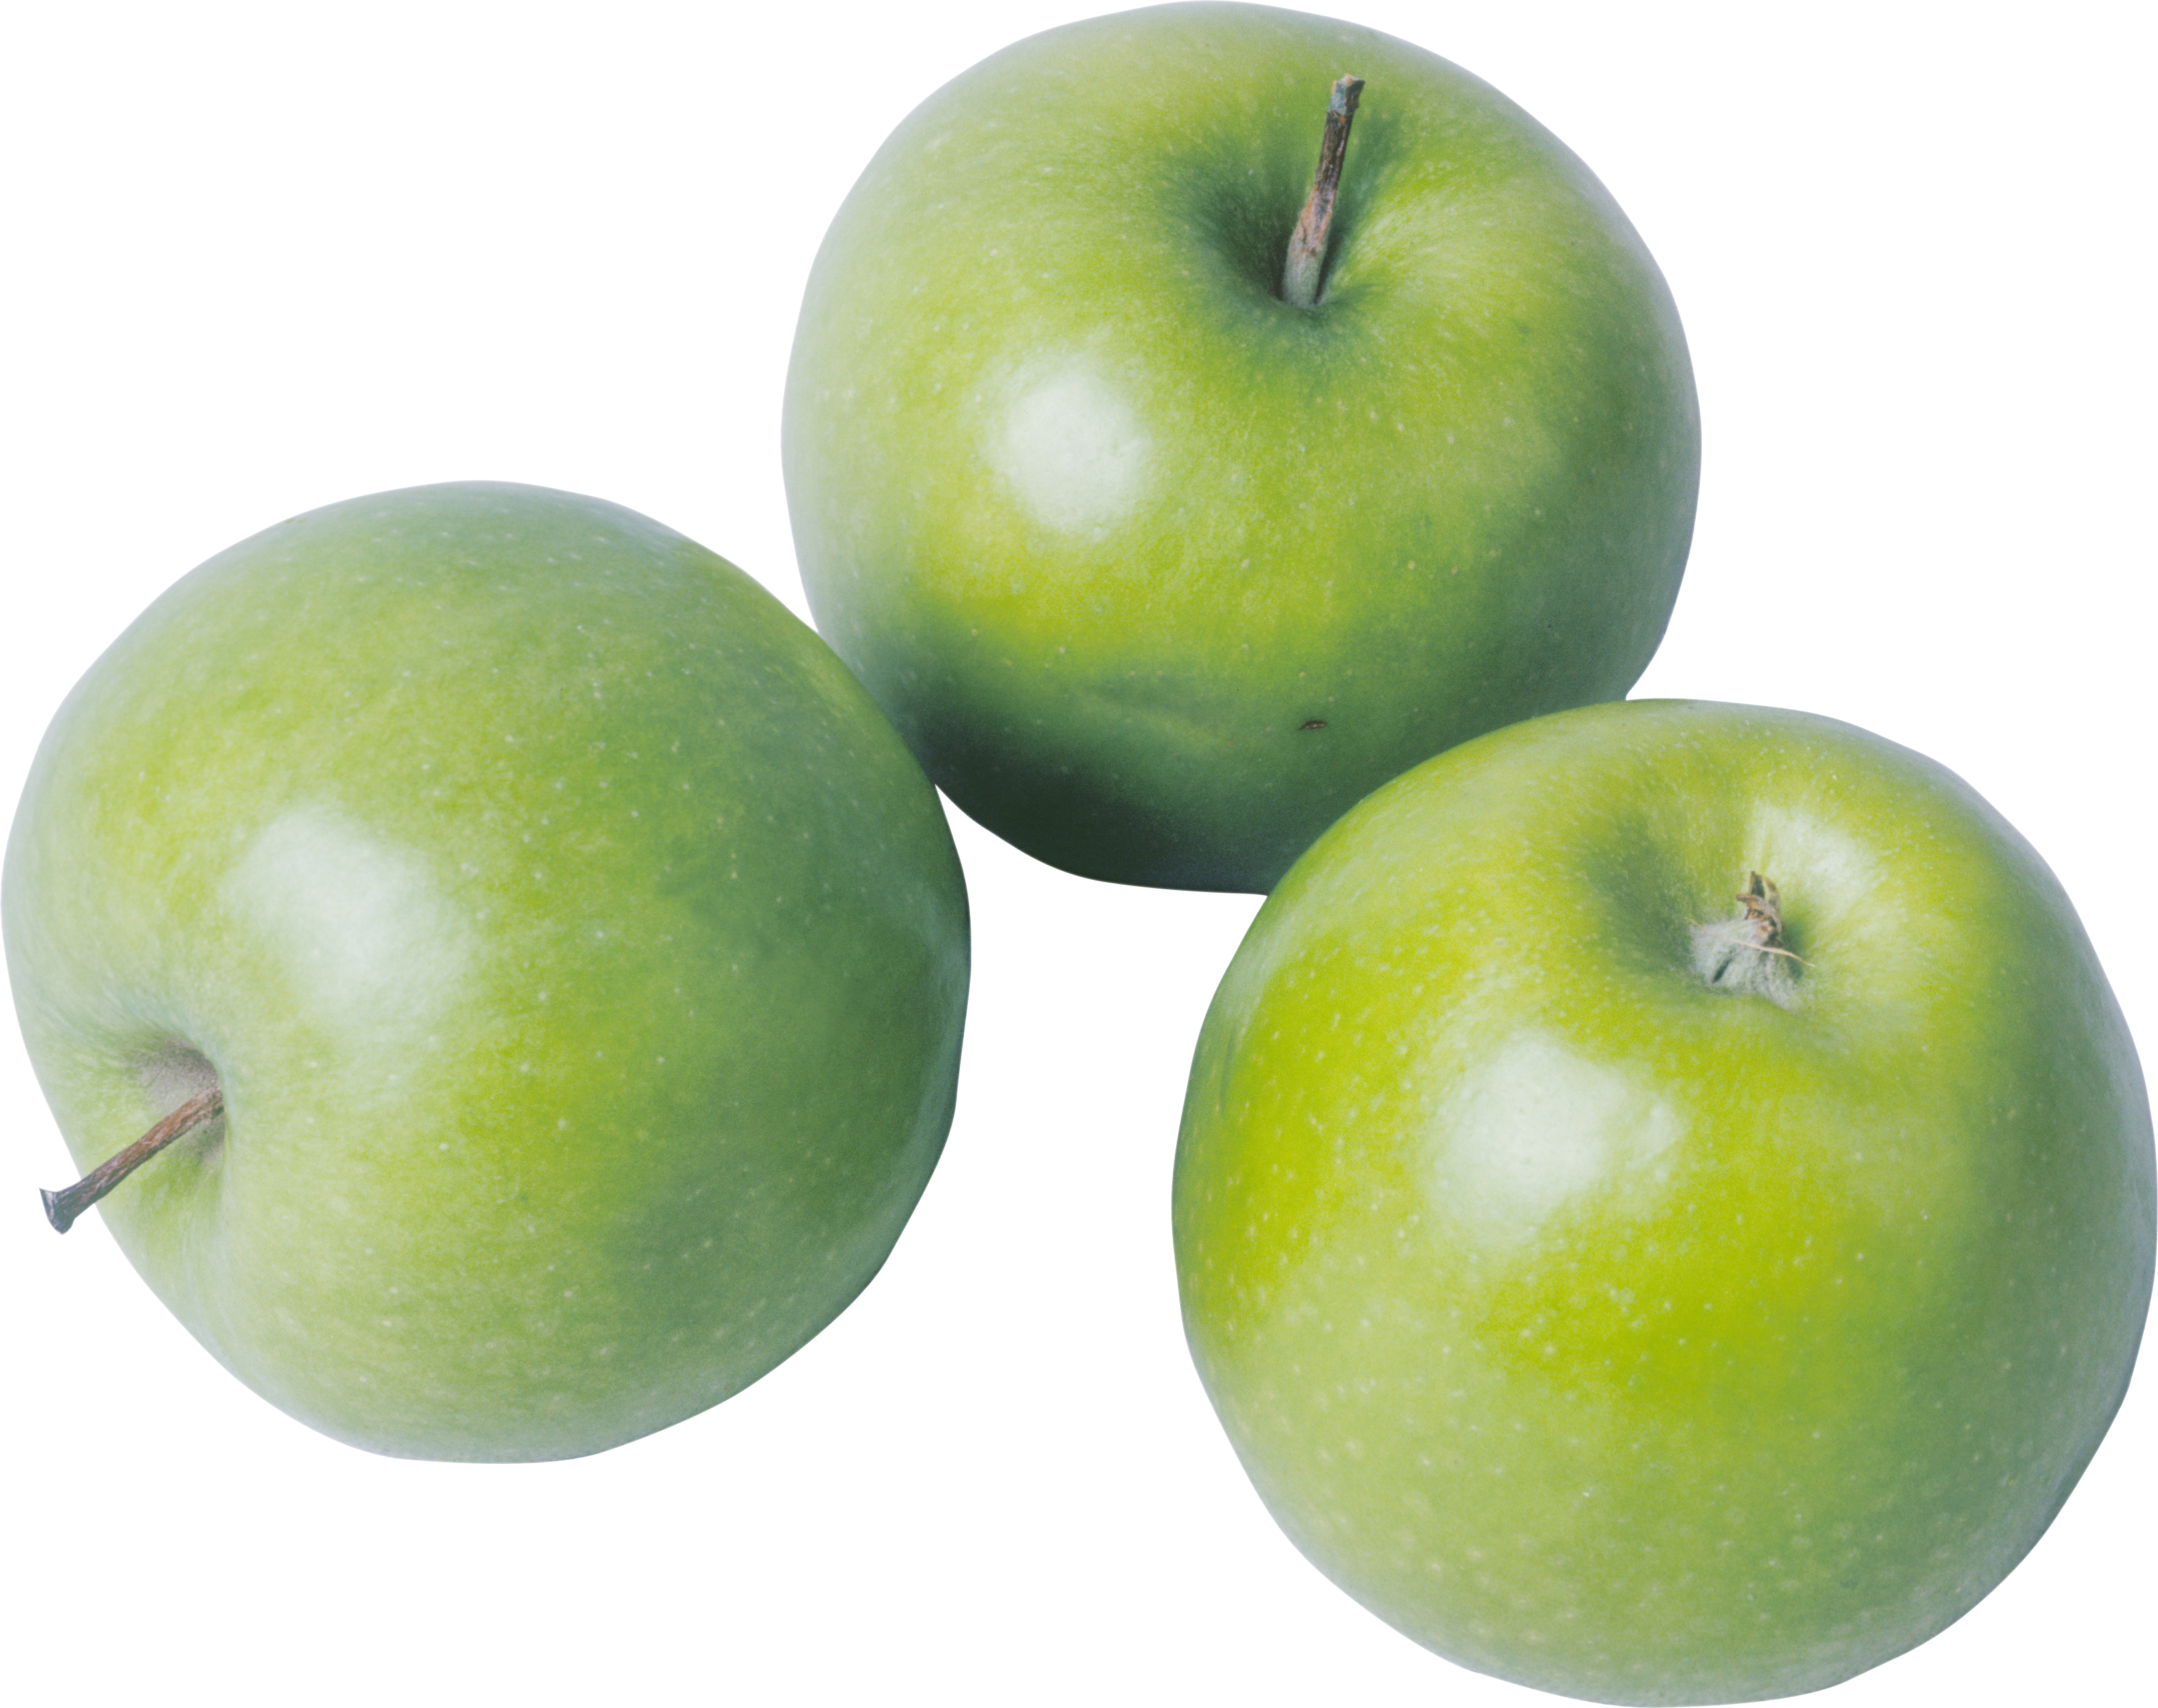 Ba quả táo